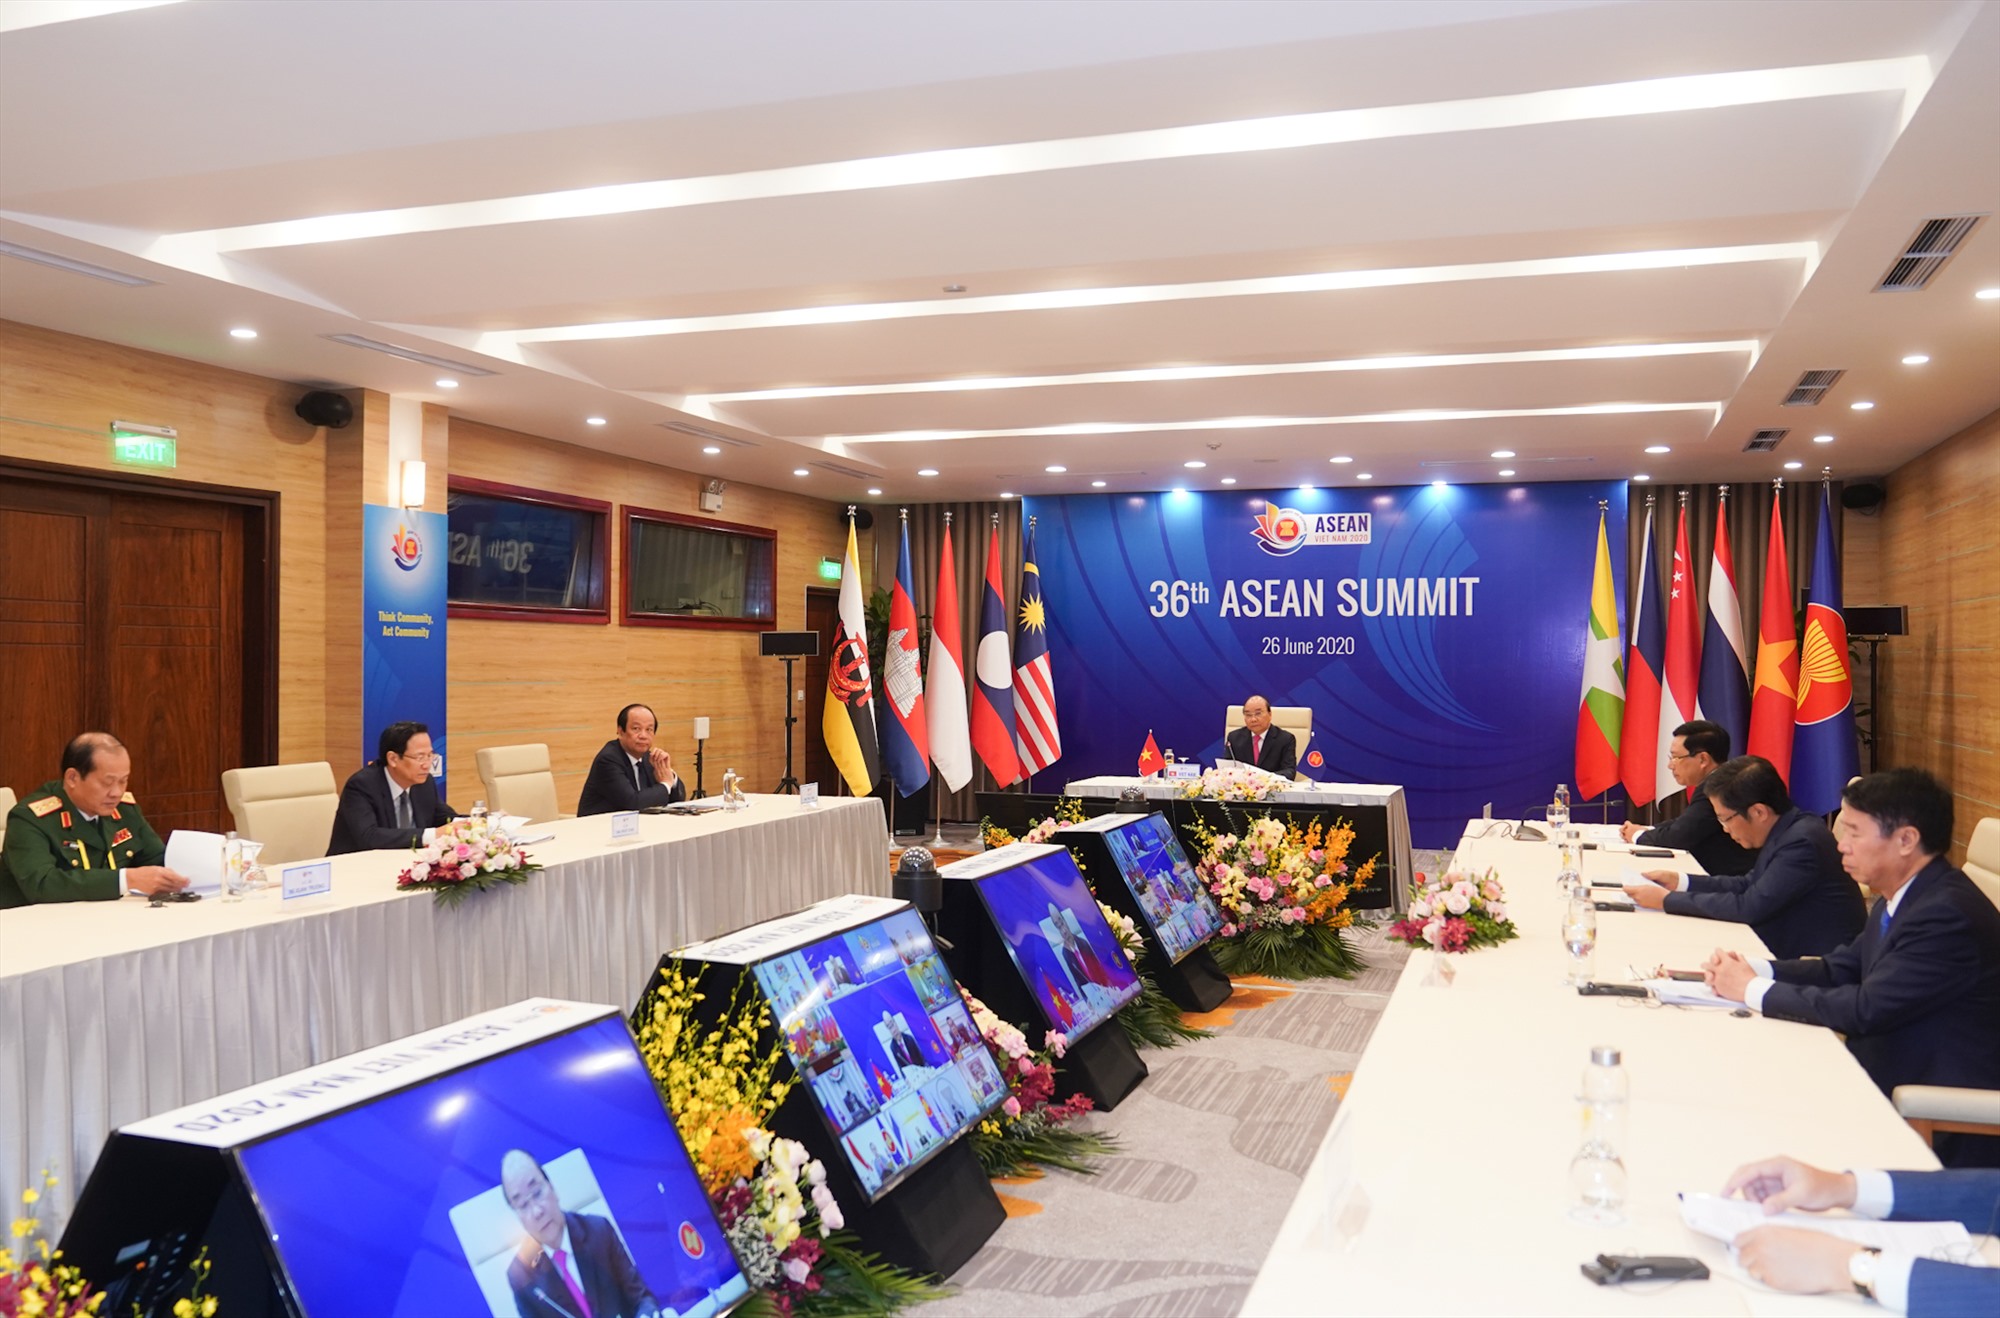 Thủ tướng Nguyễn Xuân Phúc, Chủ tịch ASEAN 2020 chủ trì Phiên toàn thể Hội nghị Cấp cao ASEAN lần thứ 36 theo hình thức trực tuyến. Ảnh VGP/Quang Hiếu